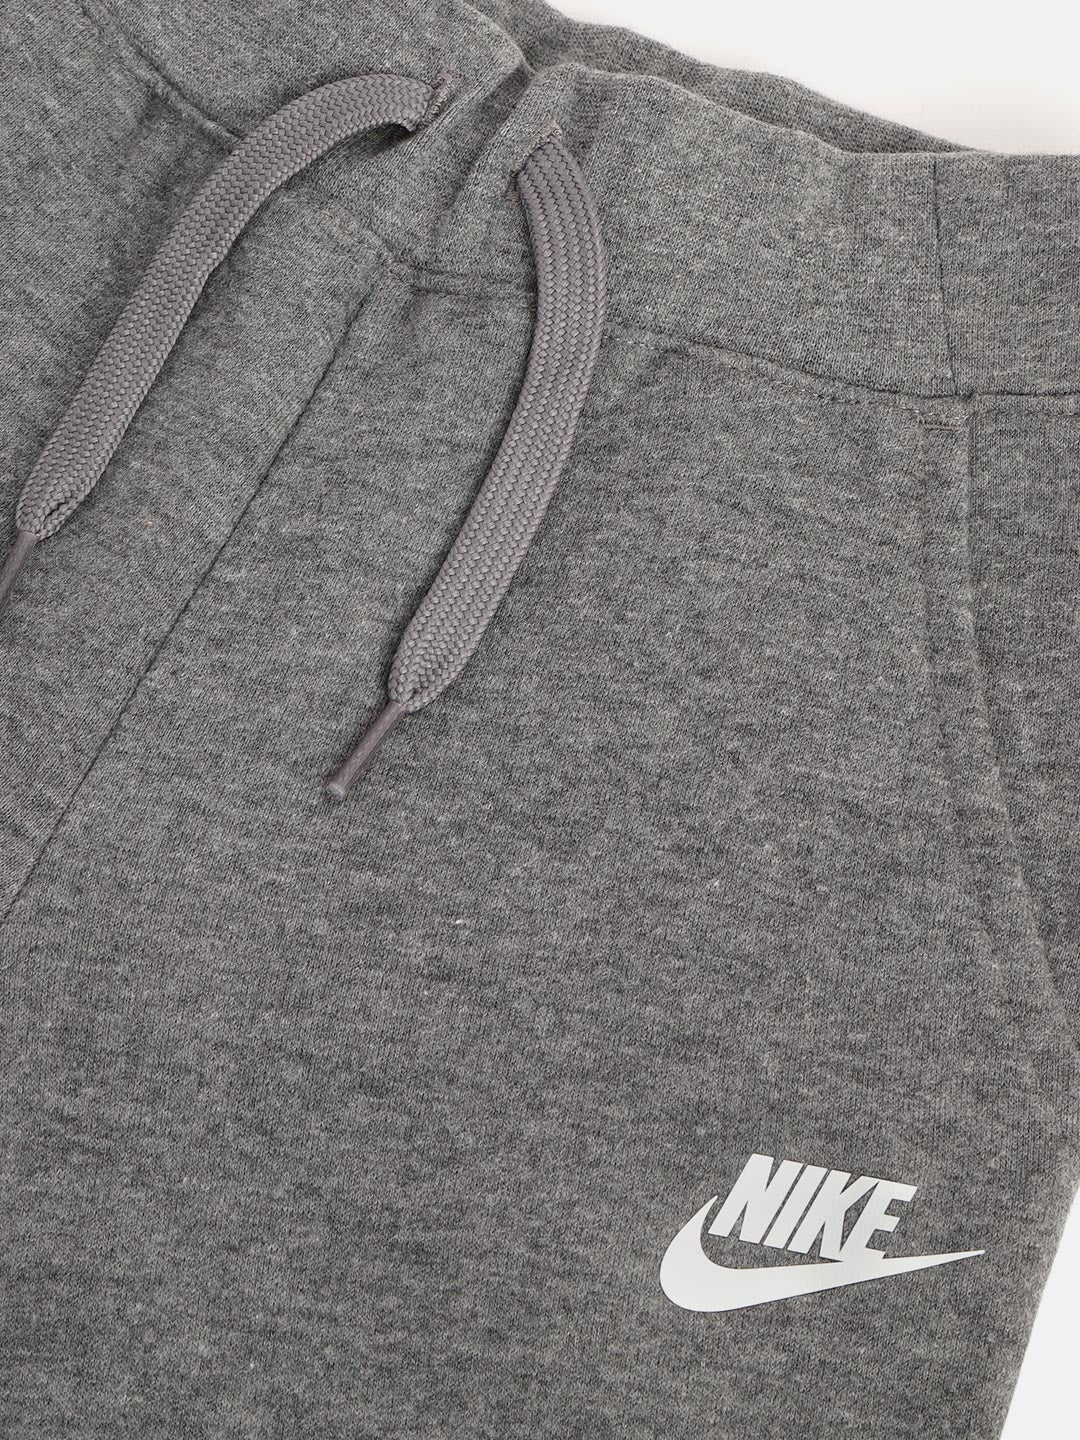 Nike Sportswear Fleece Joggers Joggers Nike   